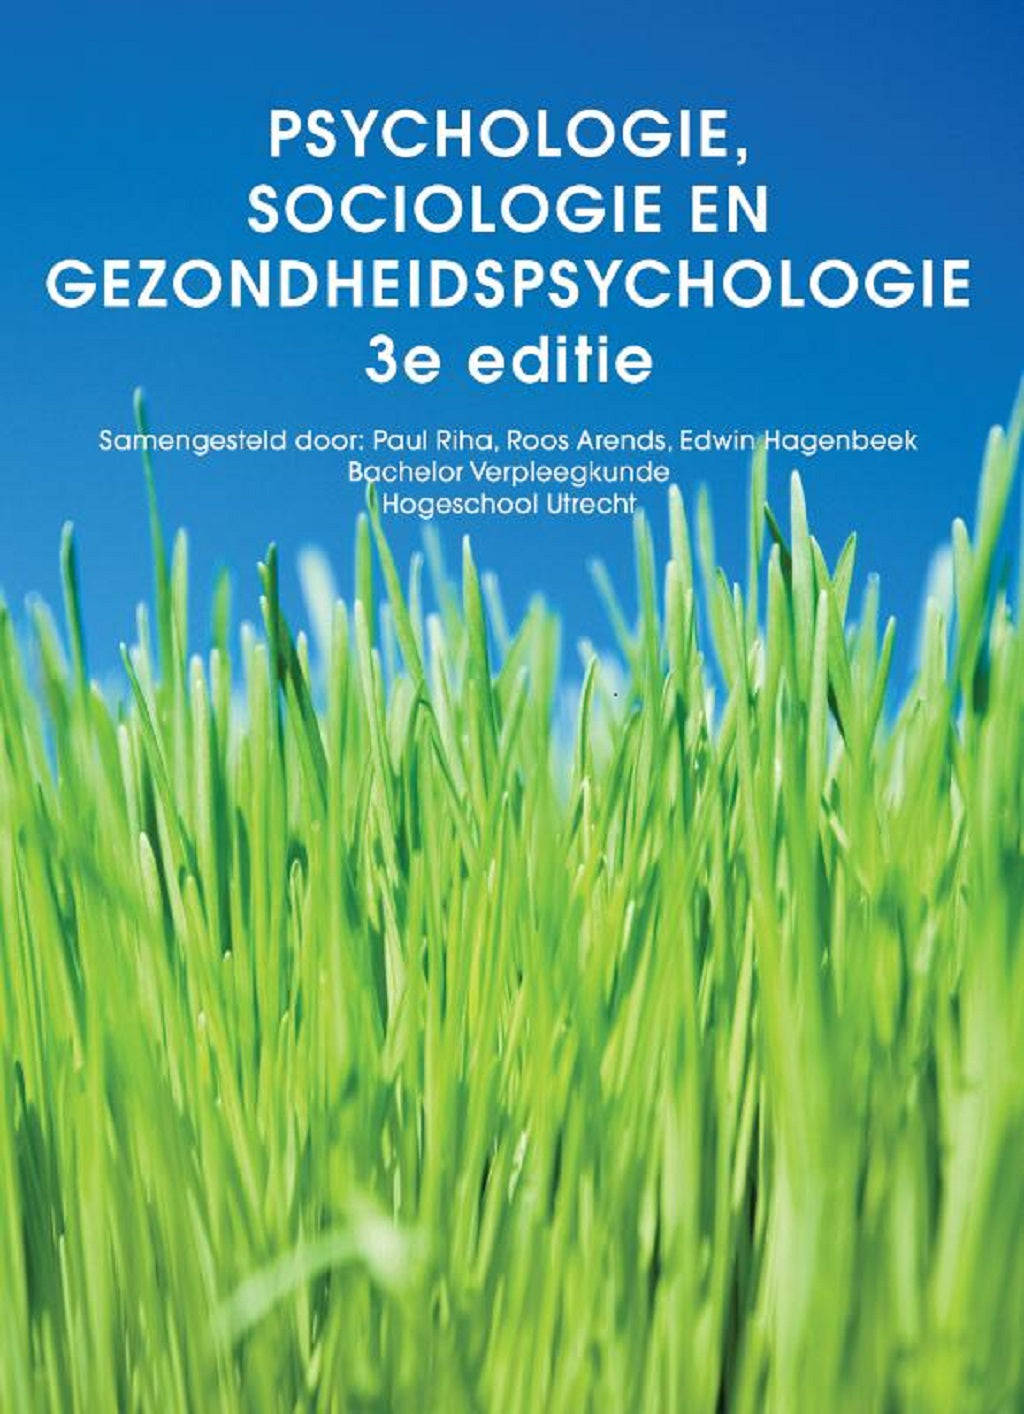 Psychologie, sociologie en gezondheidspsychologie, custom editie